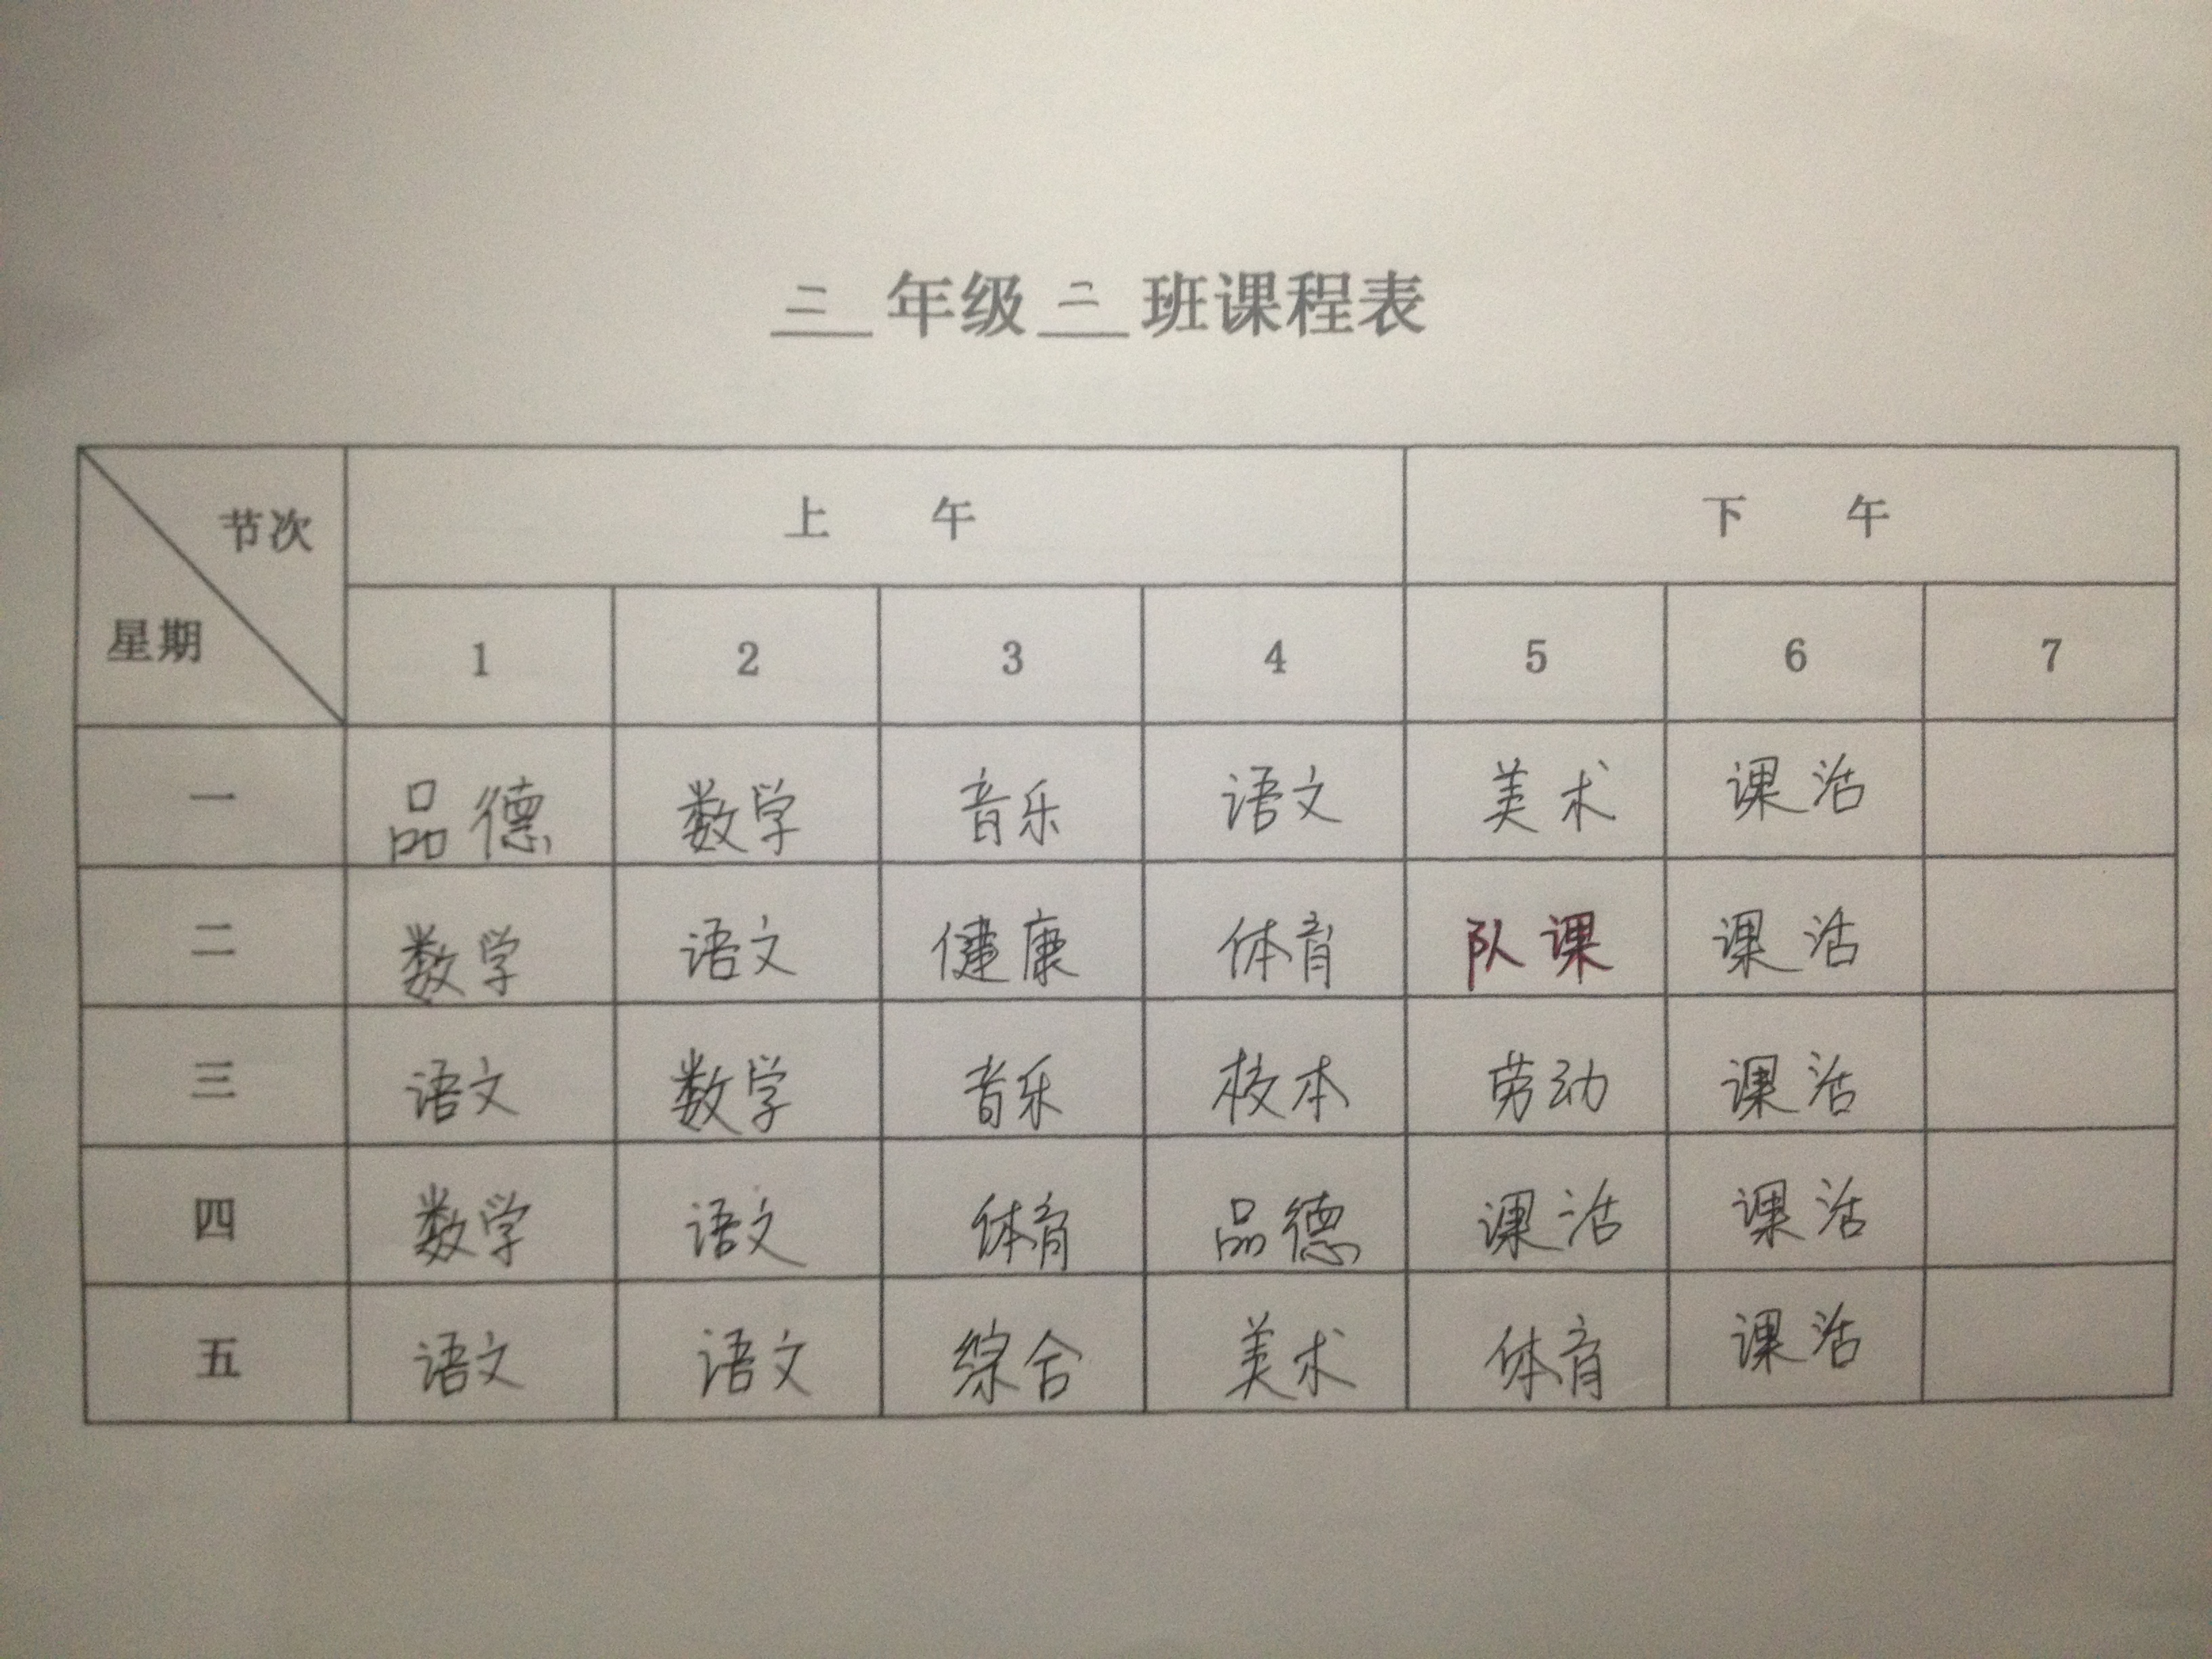 霸州市东段乡第一小学二年级课程表 - 红领巾相